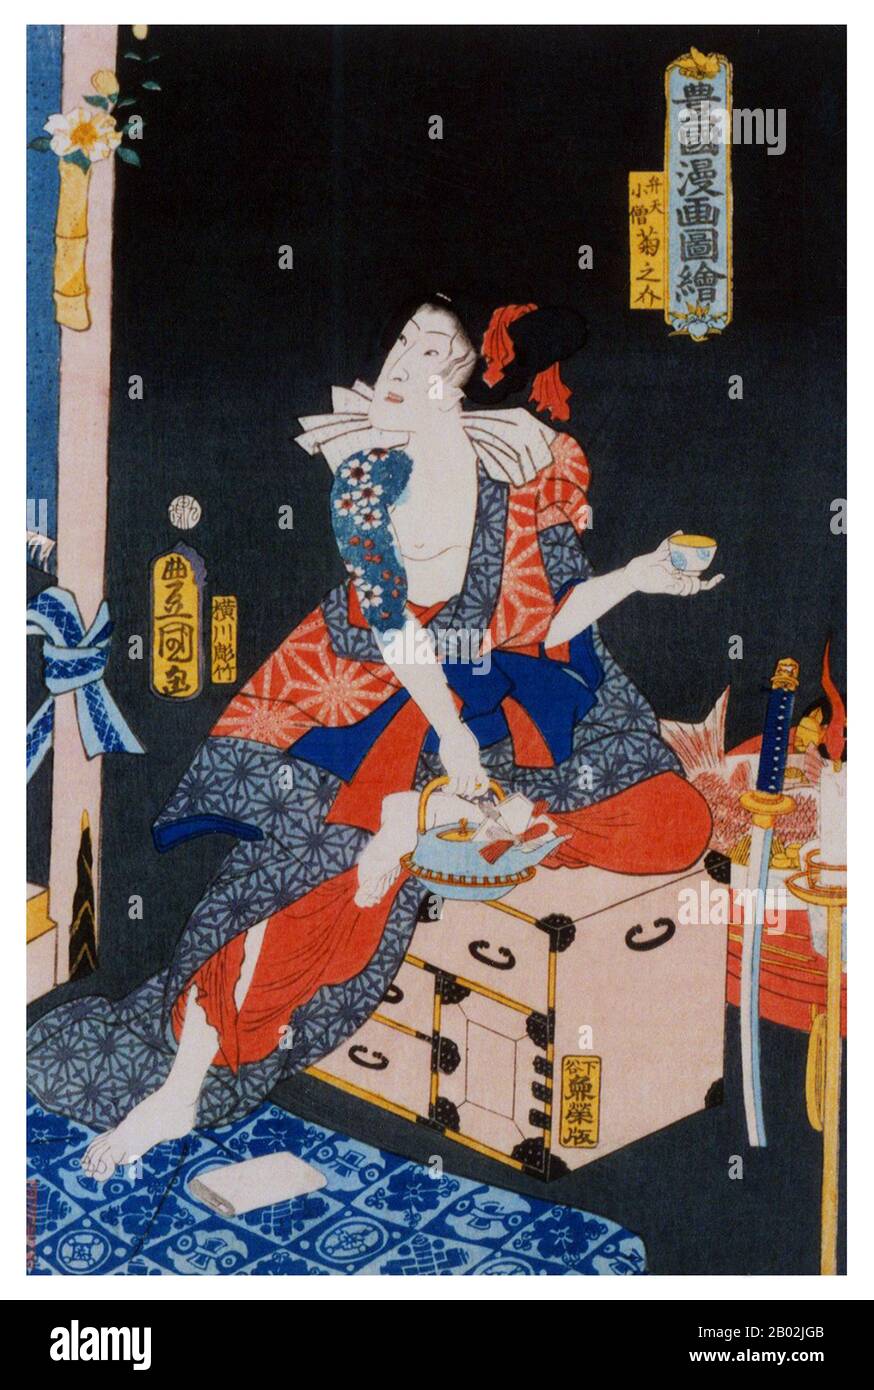 Aoto Zōshi Hana no Nishiki-e' (青砥稿花紅彩画), como se conoce la versión original  y completa de esta obra, es un cuento en cinco actos del shiranamimono  (cuentos de ladrones) sub-categoría del género kizewamono (